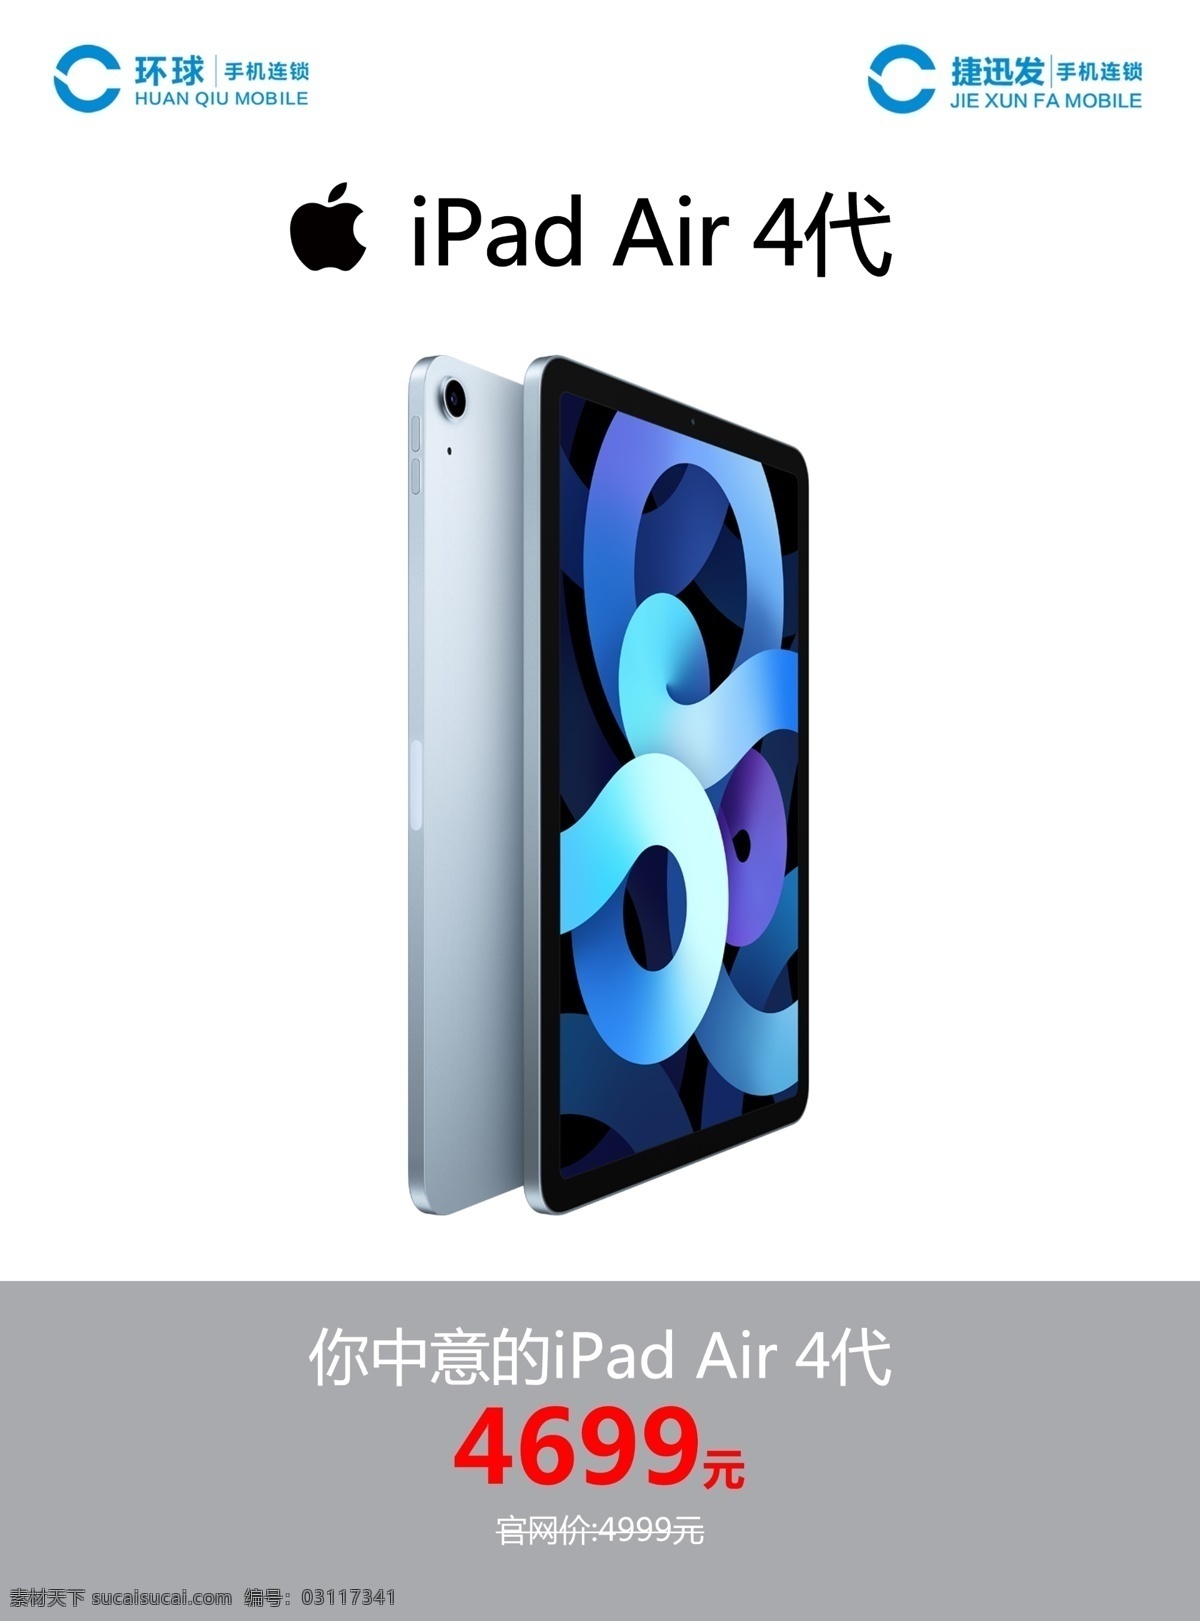 苹果ipad air4 代 苹果 apple logo ipad air 4代 产品海报 促销价 通讯 平板电脑 新品